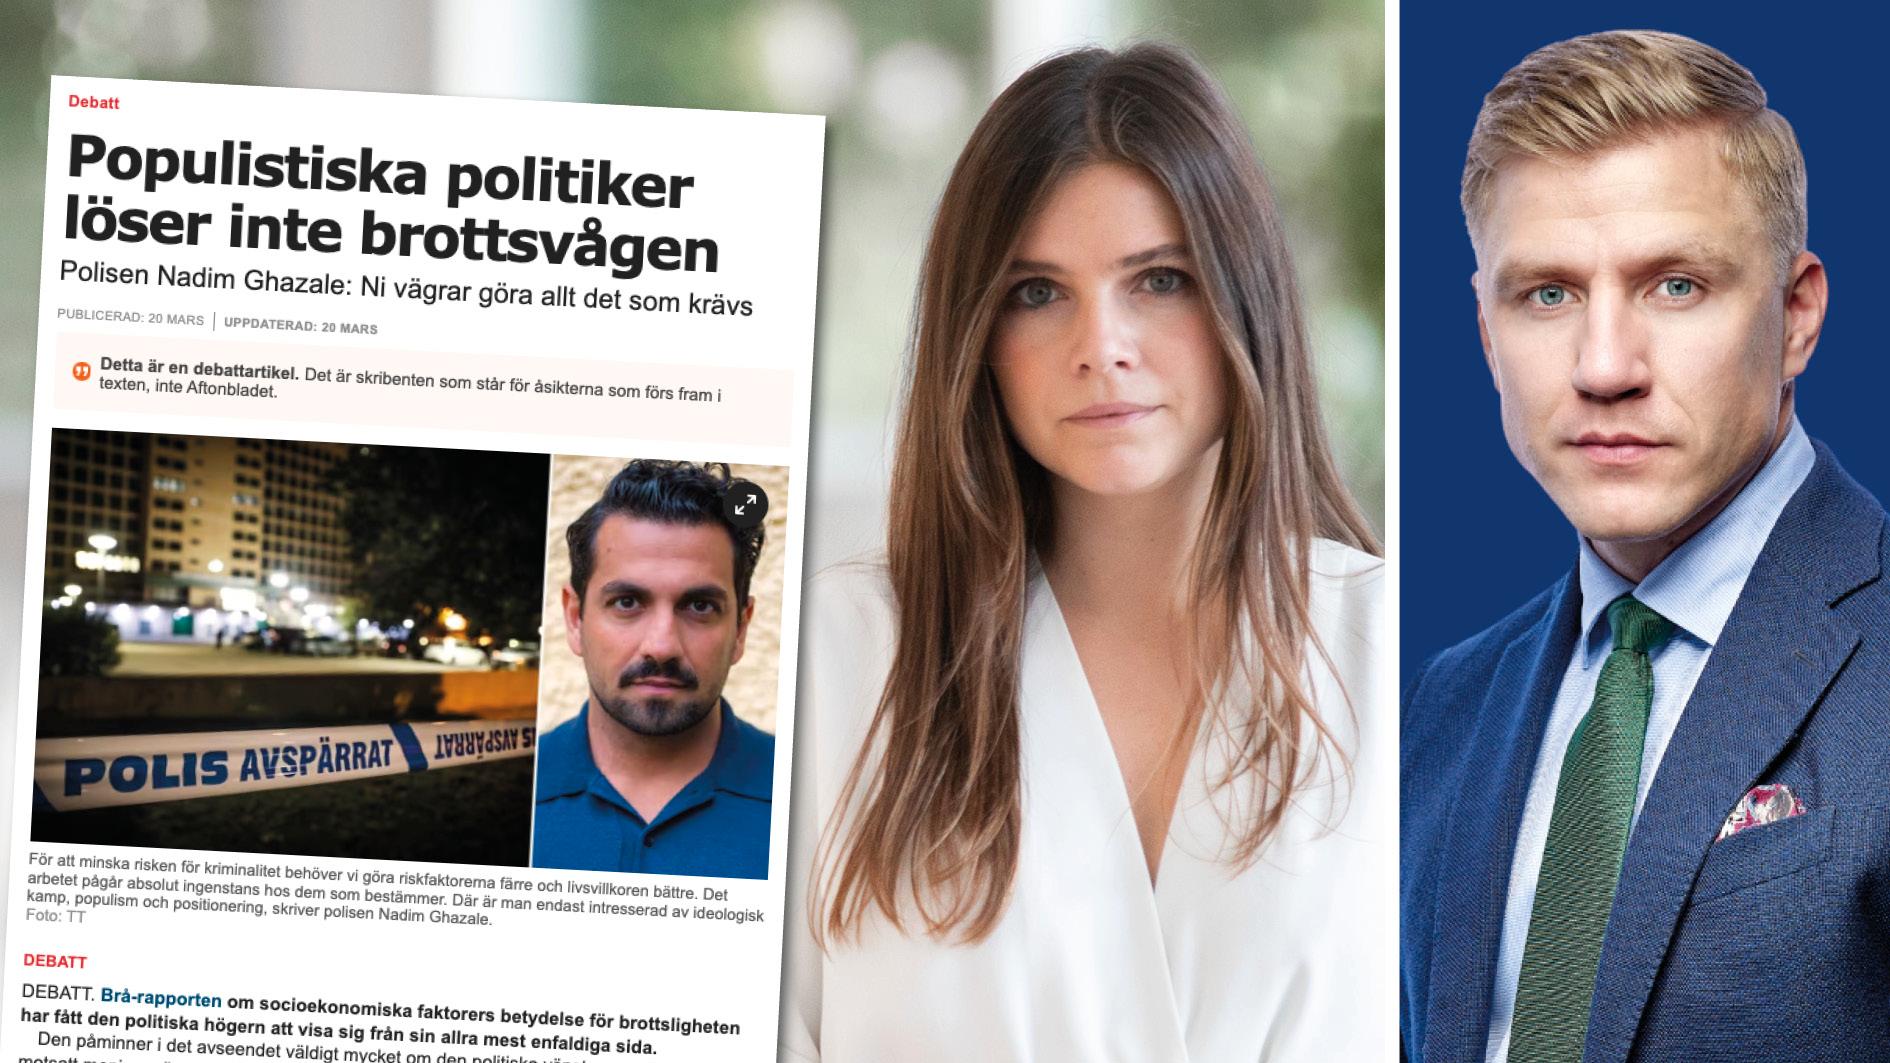 Polisen Nadim Ghazale beskriver högersidan i svensk politik som ideologiskt marinerad och med skygglappar. Hos oss finns inga skygglappar. Vi kommer göra det som krävs mot brottsligheten. Replik från Louise Meijer och Fredrik Kärrholm, Moderaterna.